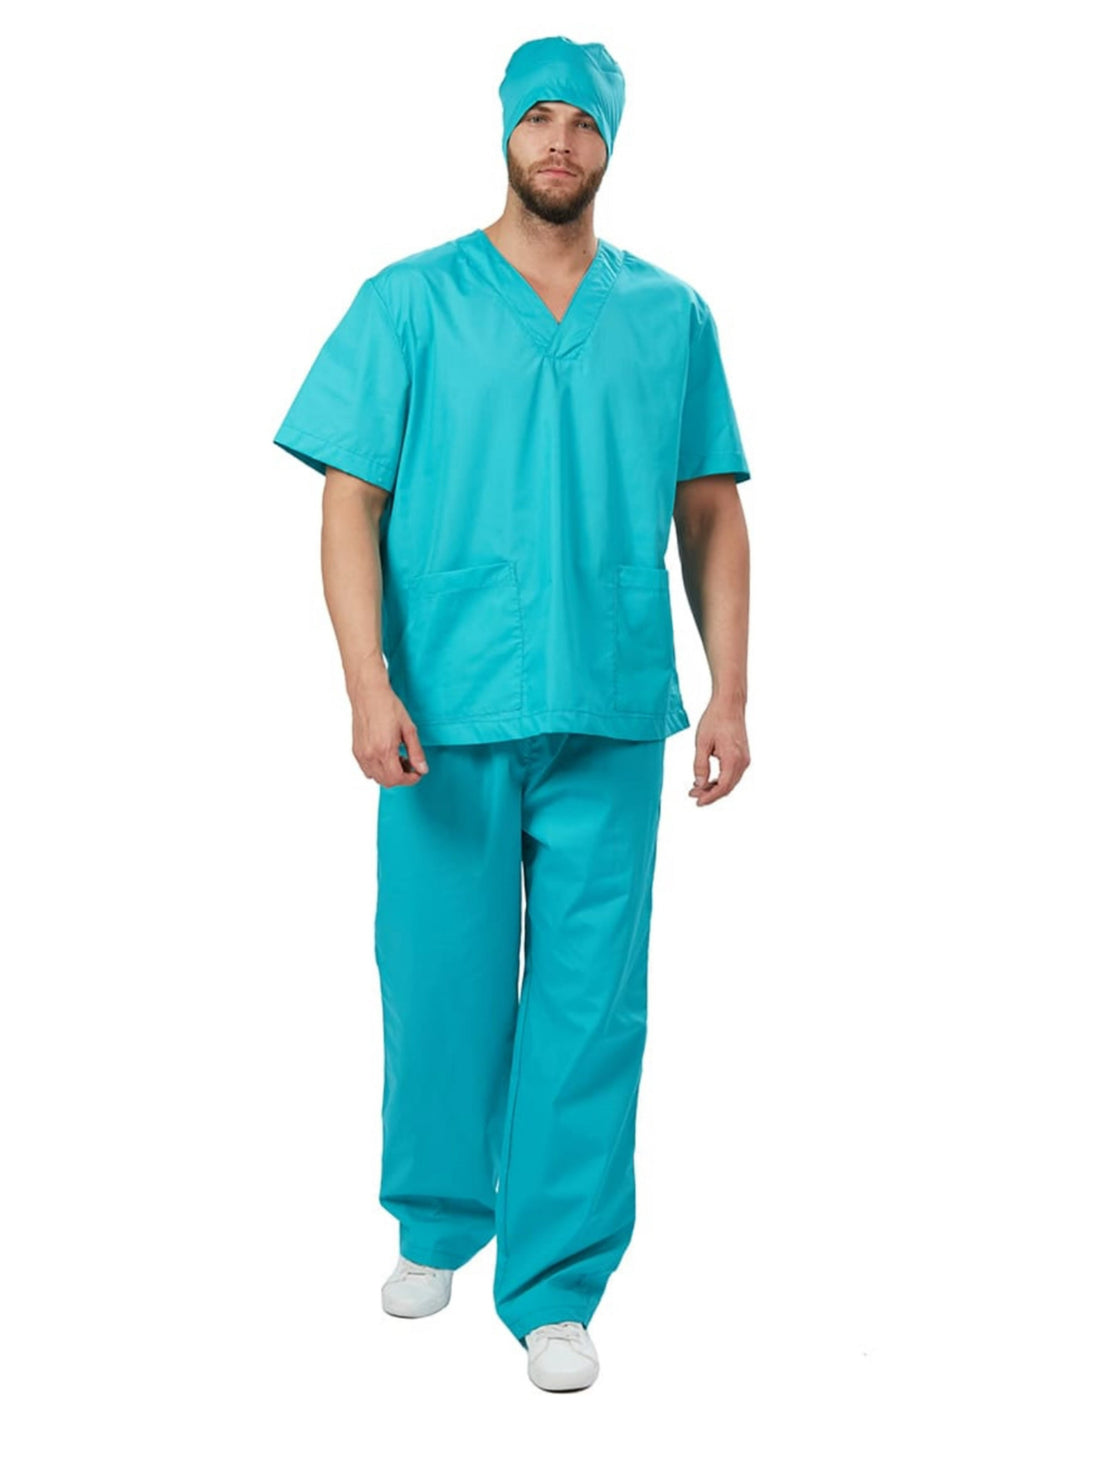 Pijama Quirúrgica Uniformes Stanford de Hombre Repelente y resistente